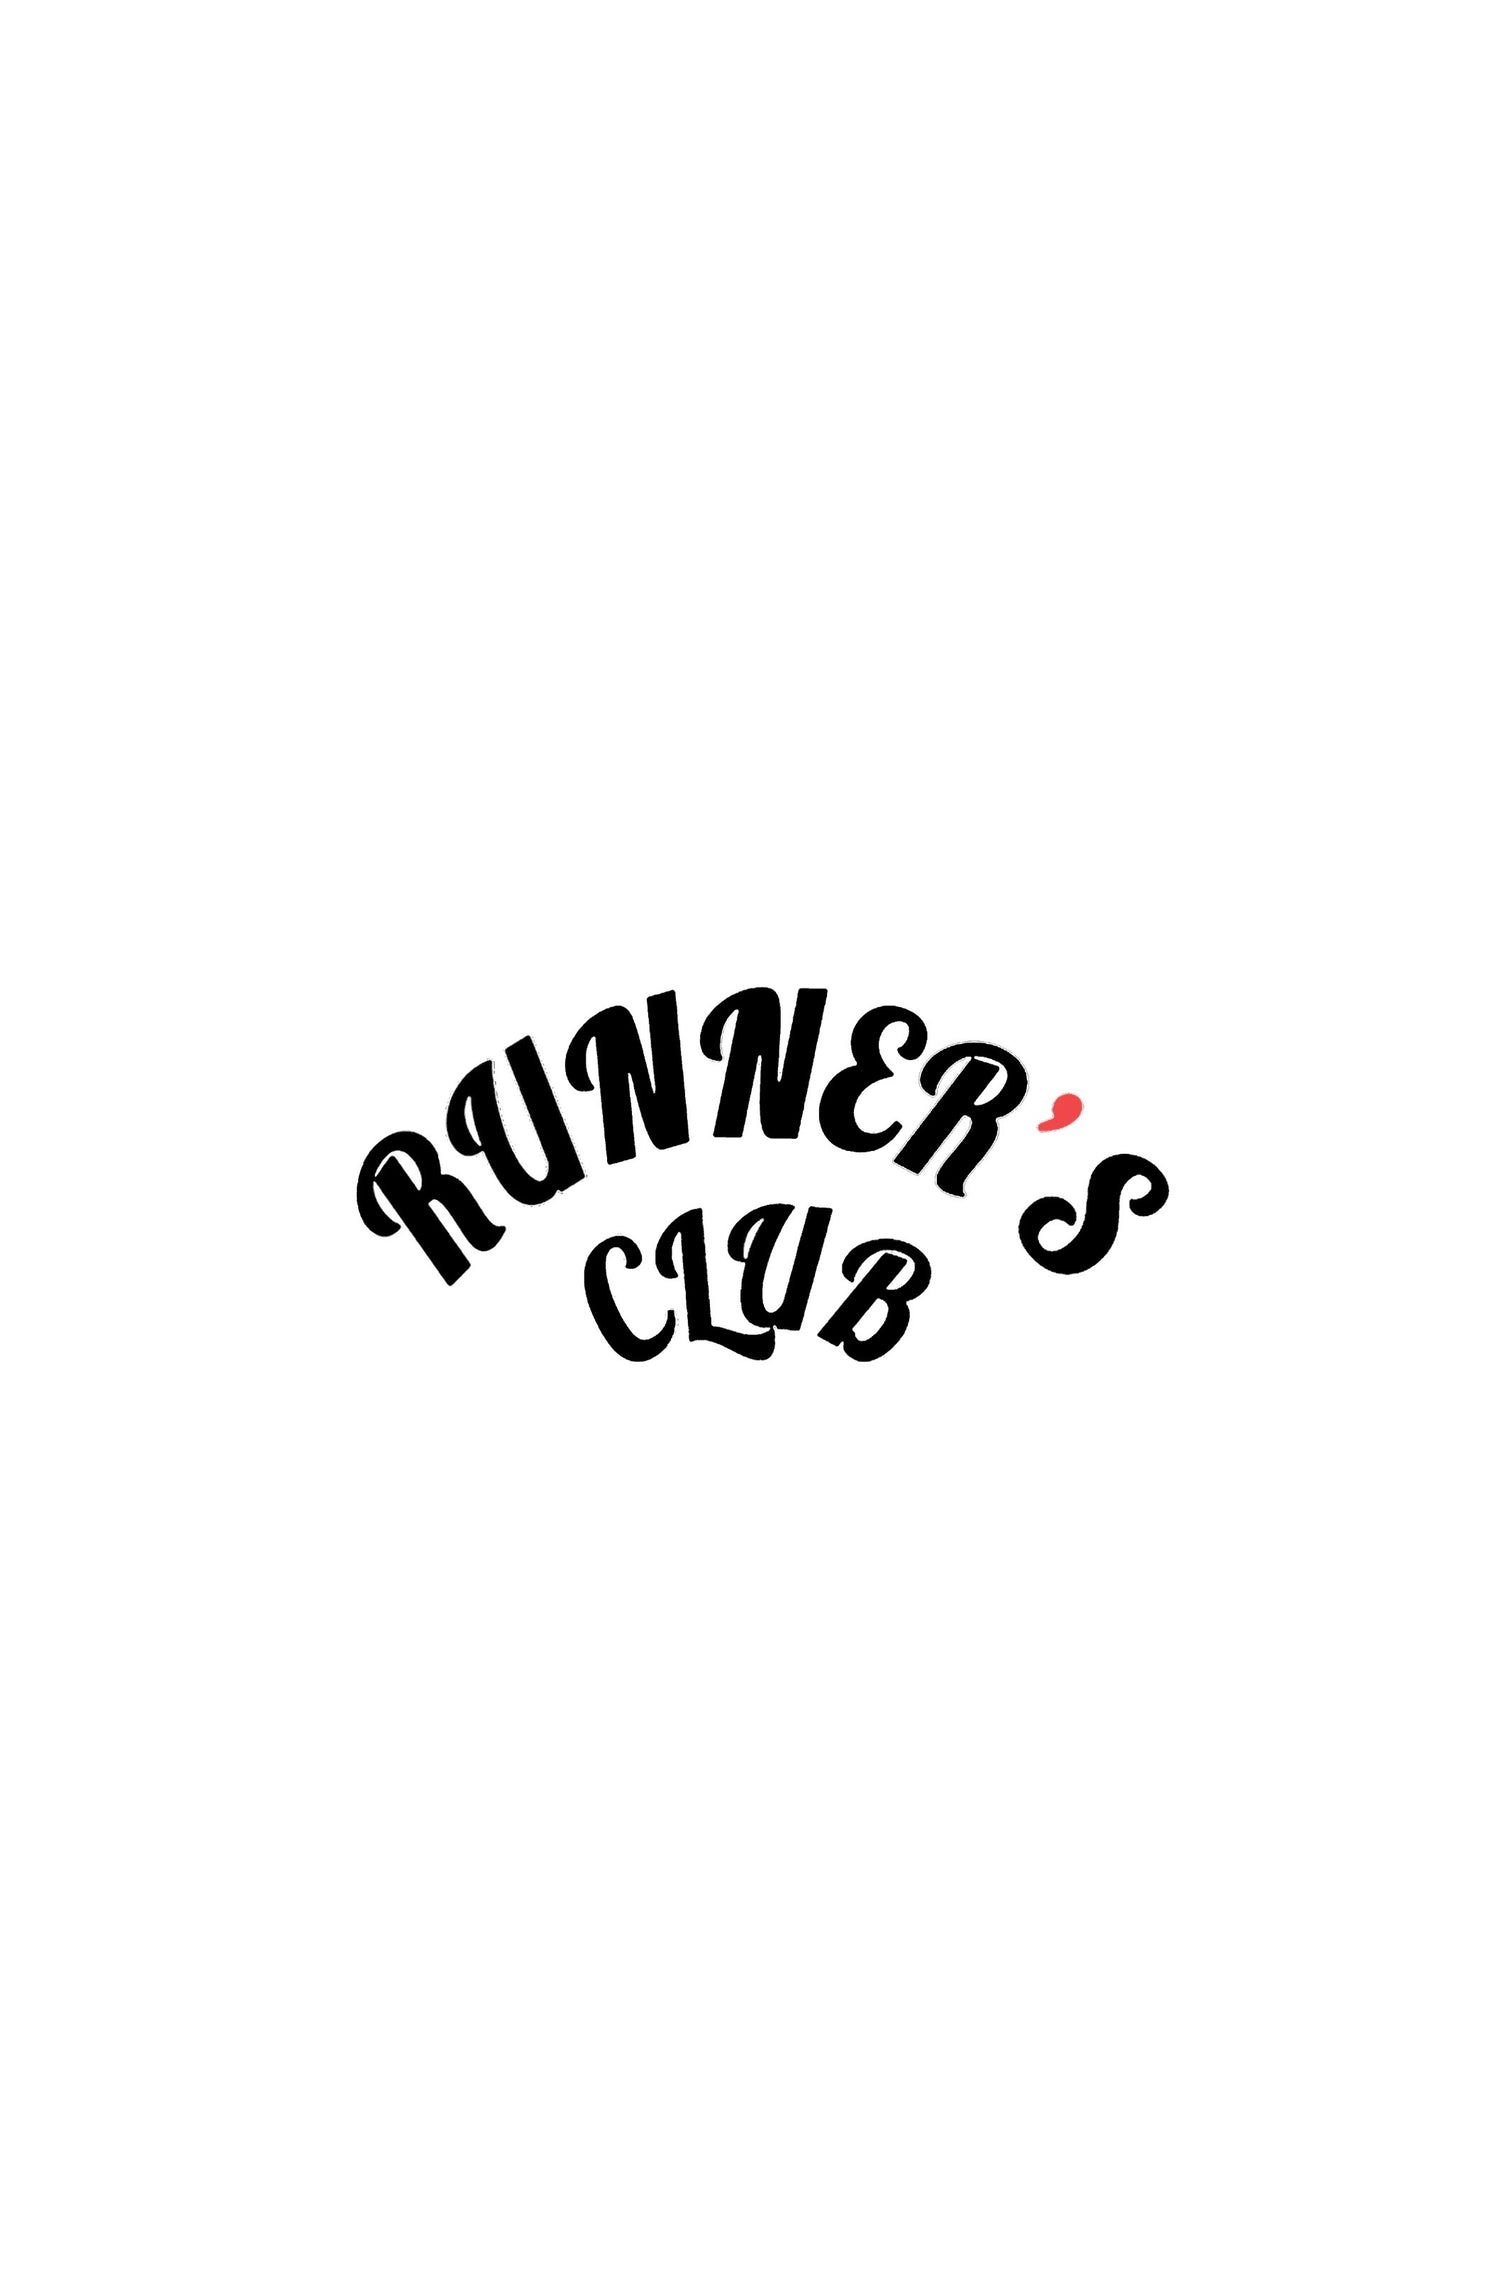 RunnersClub